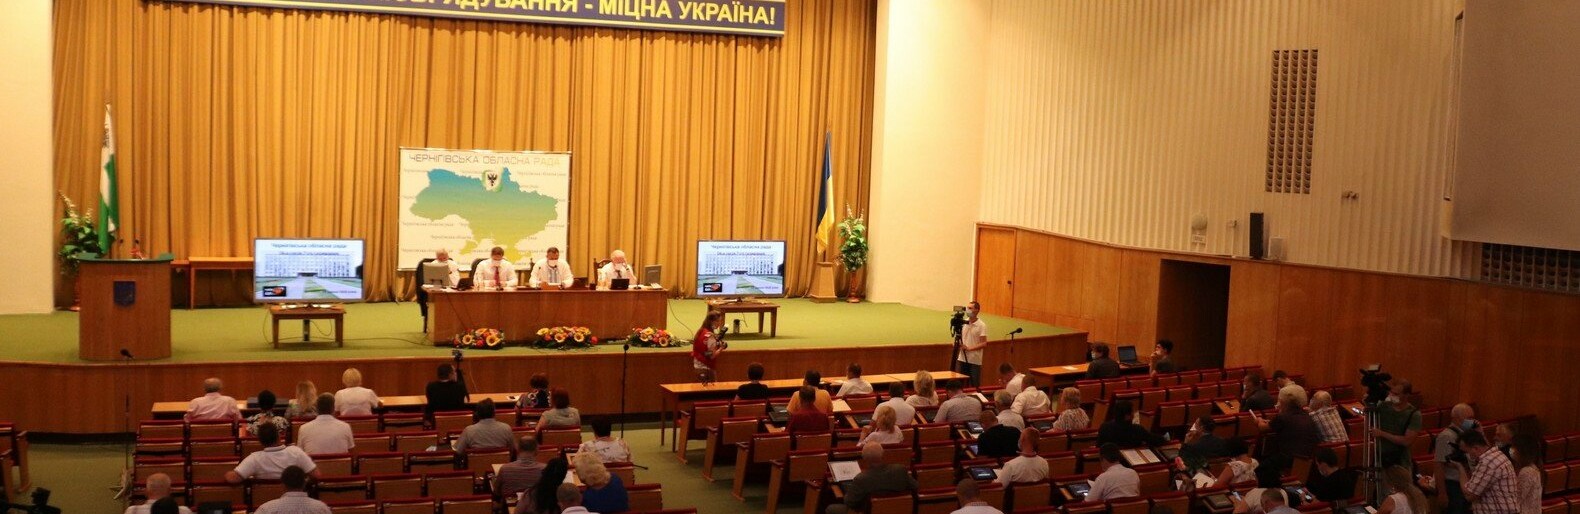 Чернігівська облрада готова прийняти депутатів з 8 партій: офіційні результати виборів